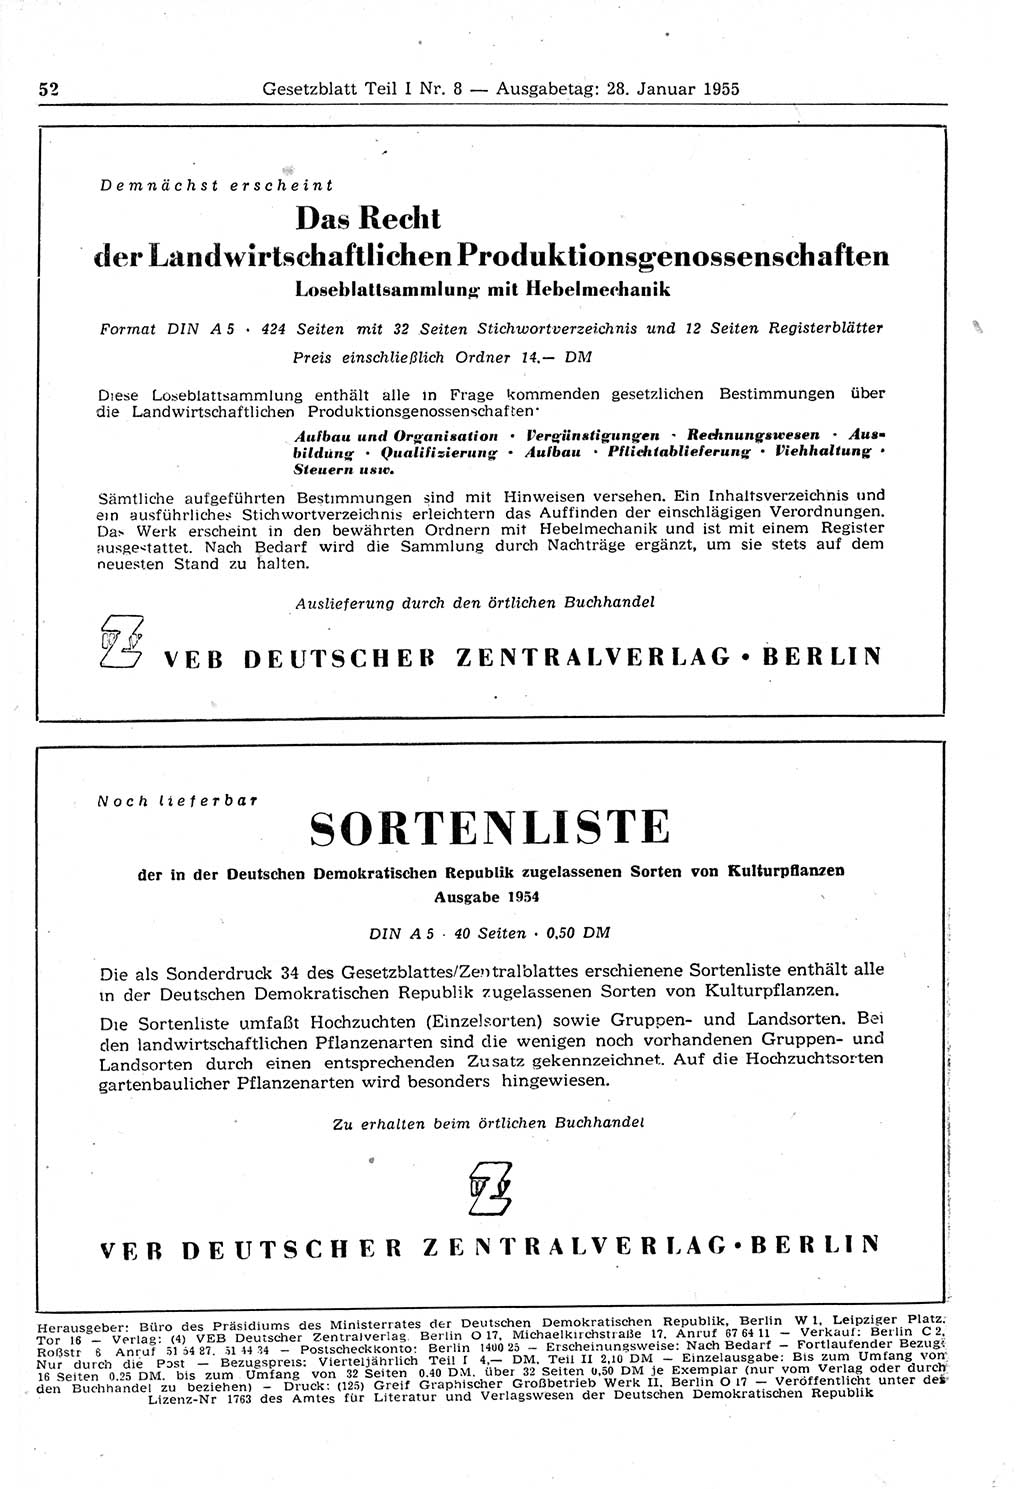 Gesetzblatt (GBl.) der Deutschen Demokratischen Republik (DDR) Teil Ⅰ 1955, Seite 52 (GBl. DDR Ⅰ 1955, S. 52)